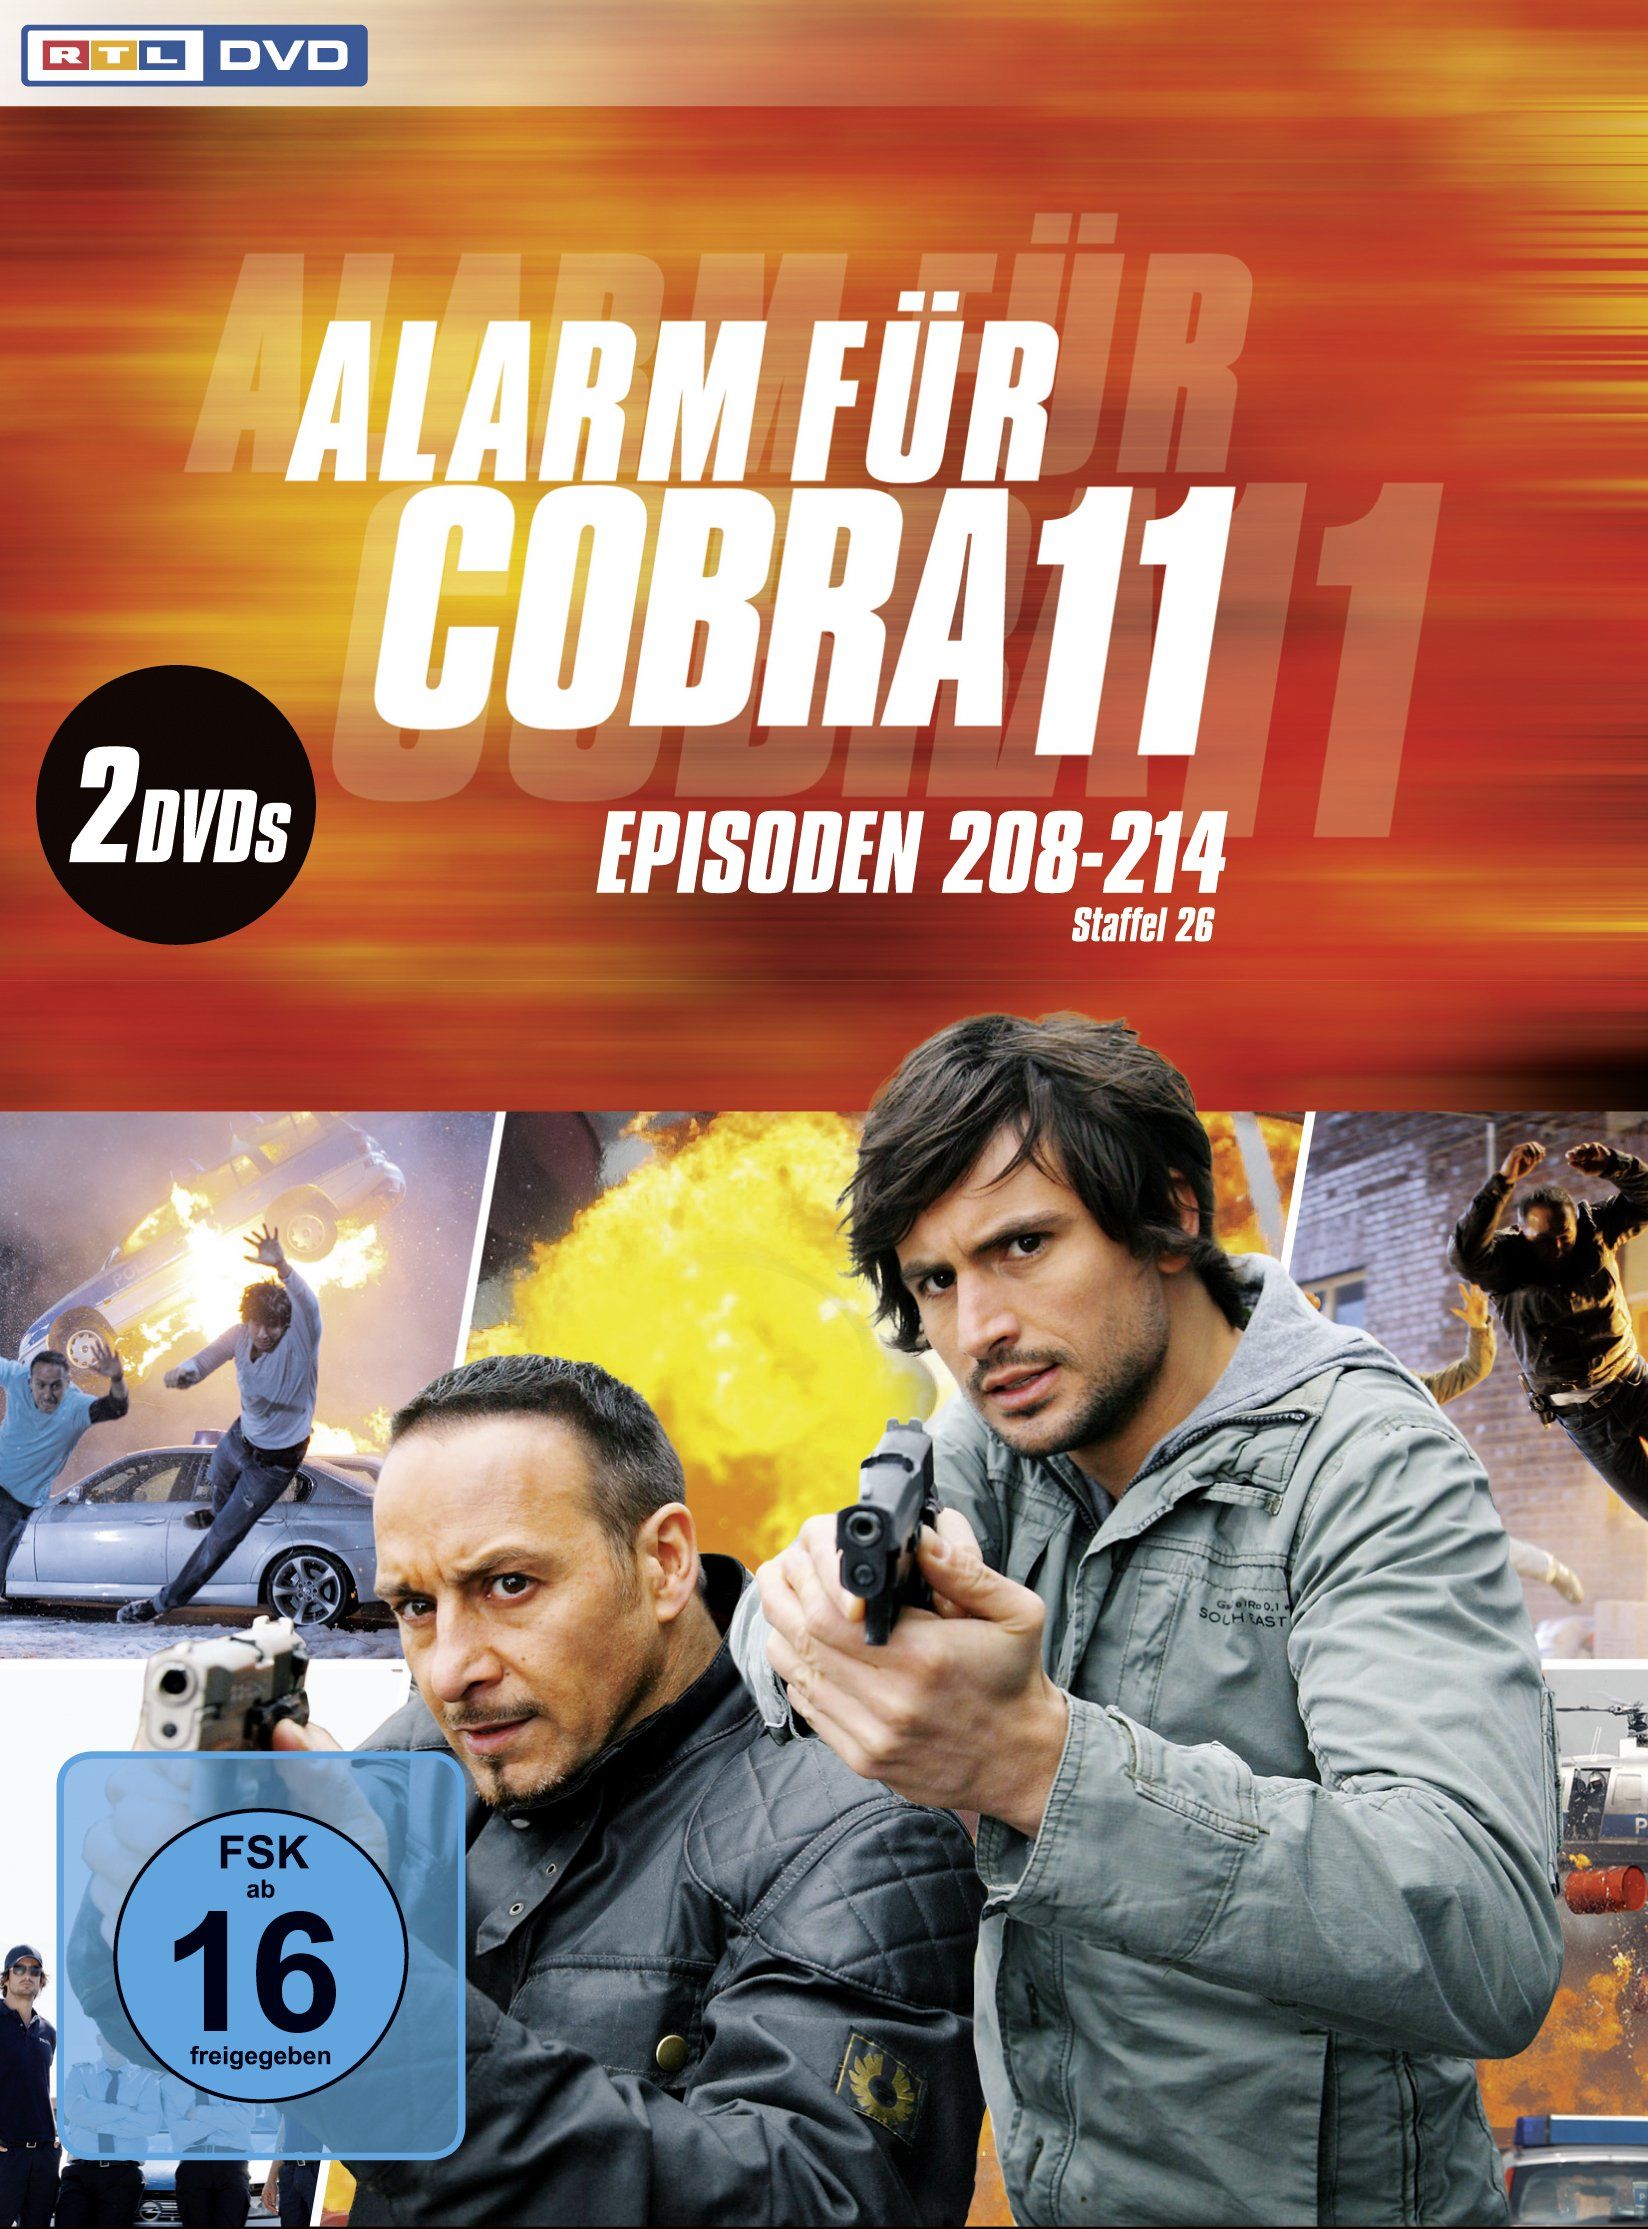 Alarm fur Cobra 11 26: Erdogan Atalay, Tom